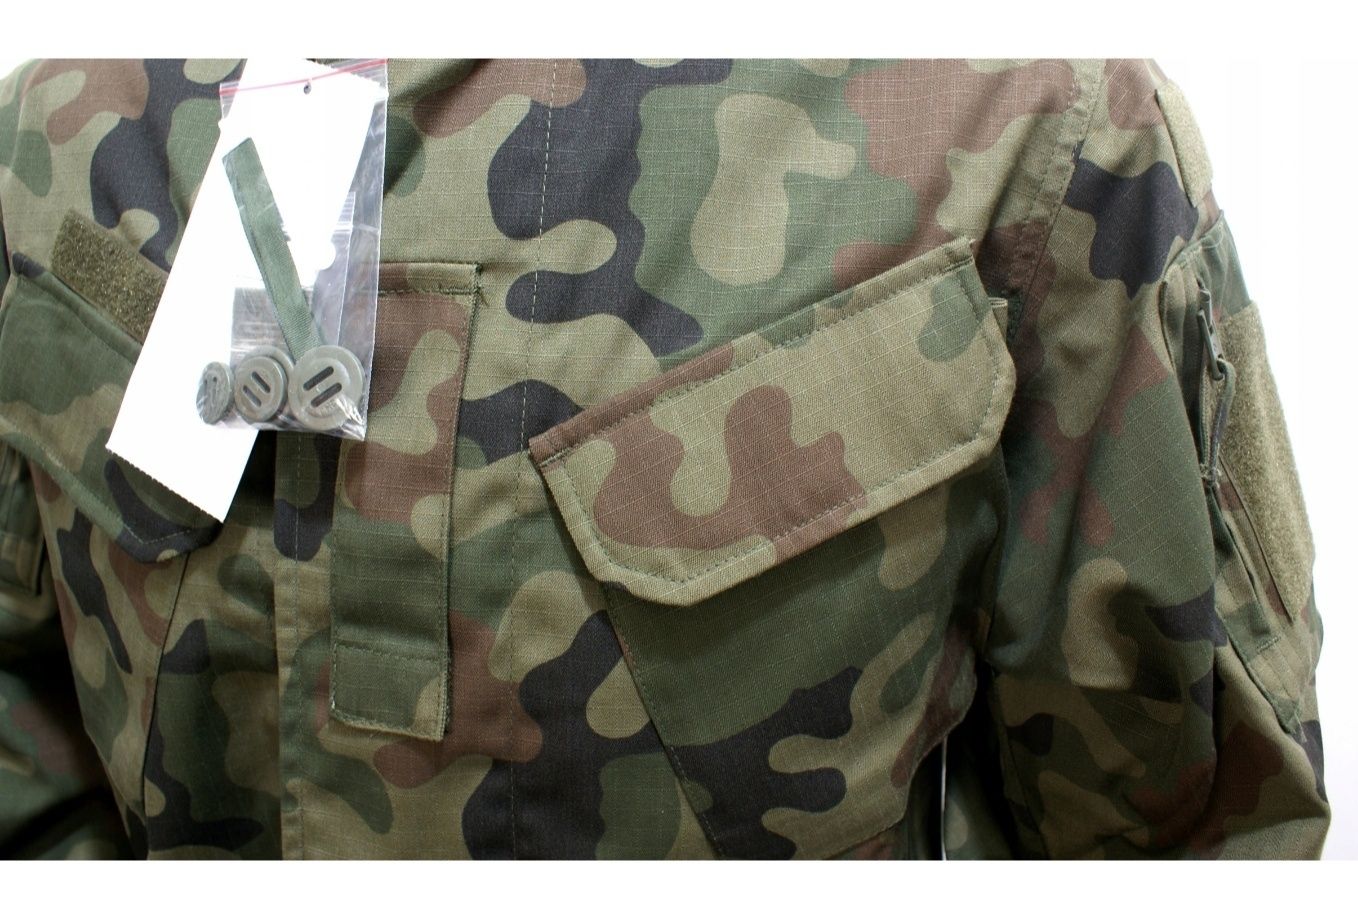 Mundur Wojskowy wzór 124  WZ 2010 klasy mundurowe XXL, XL, L, M, S, XS